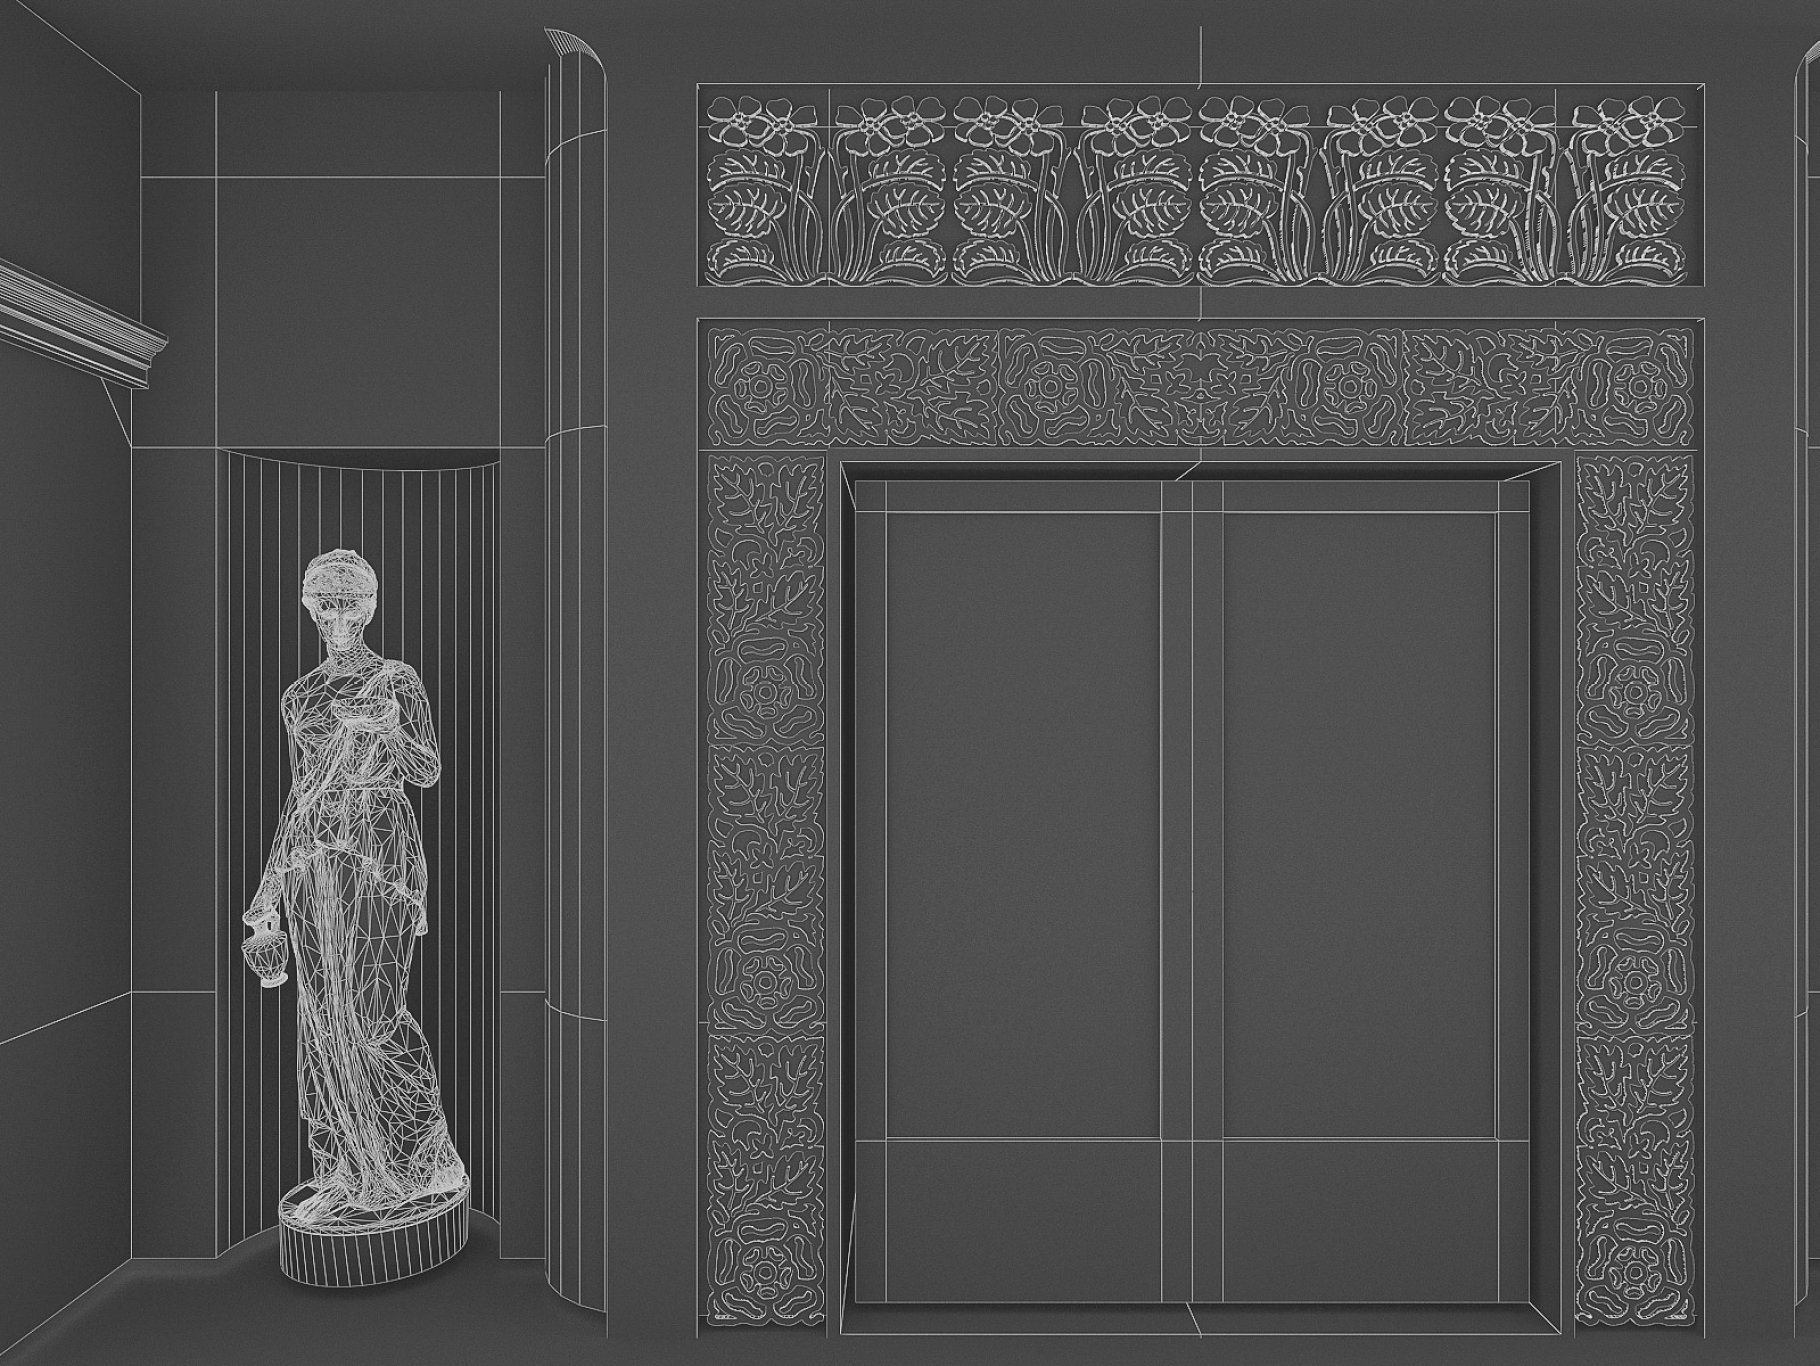 Statue and door image.